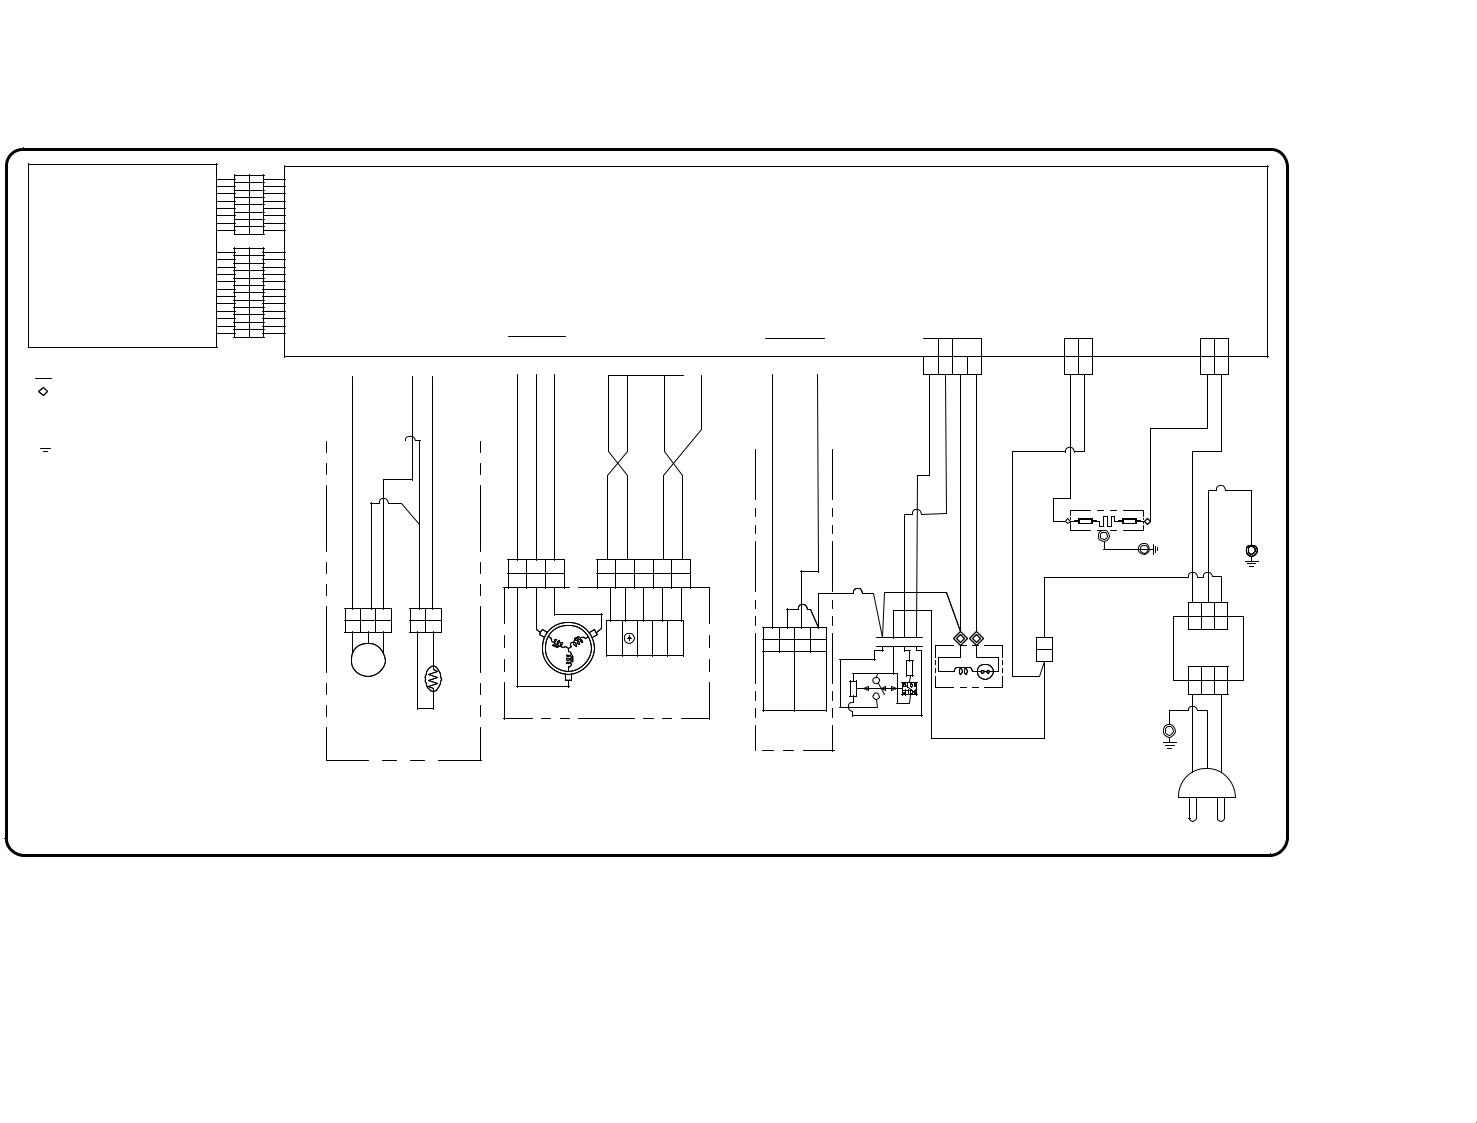 LG F1089ND, F1289ND, F1039ND, M1089ND, E1289ND Service manual